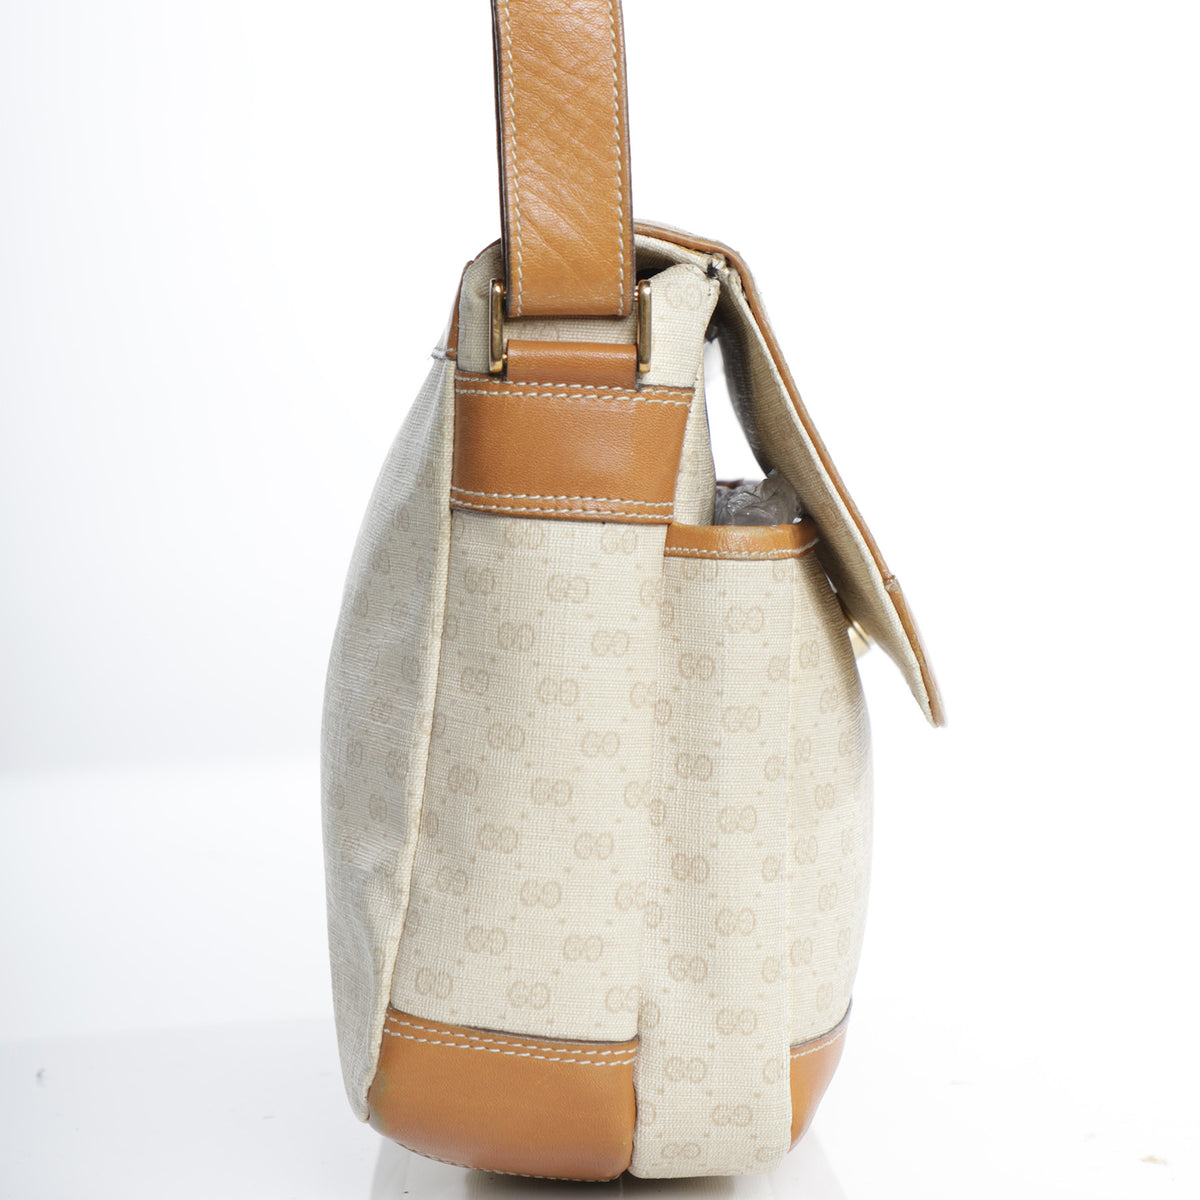 Vintage Gucci Monogram Shoulder Bag